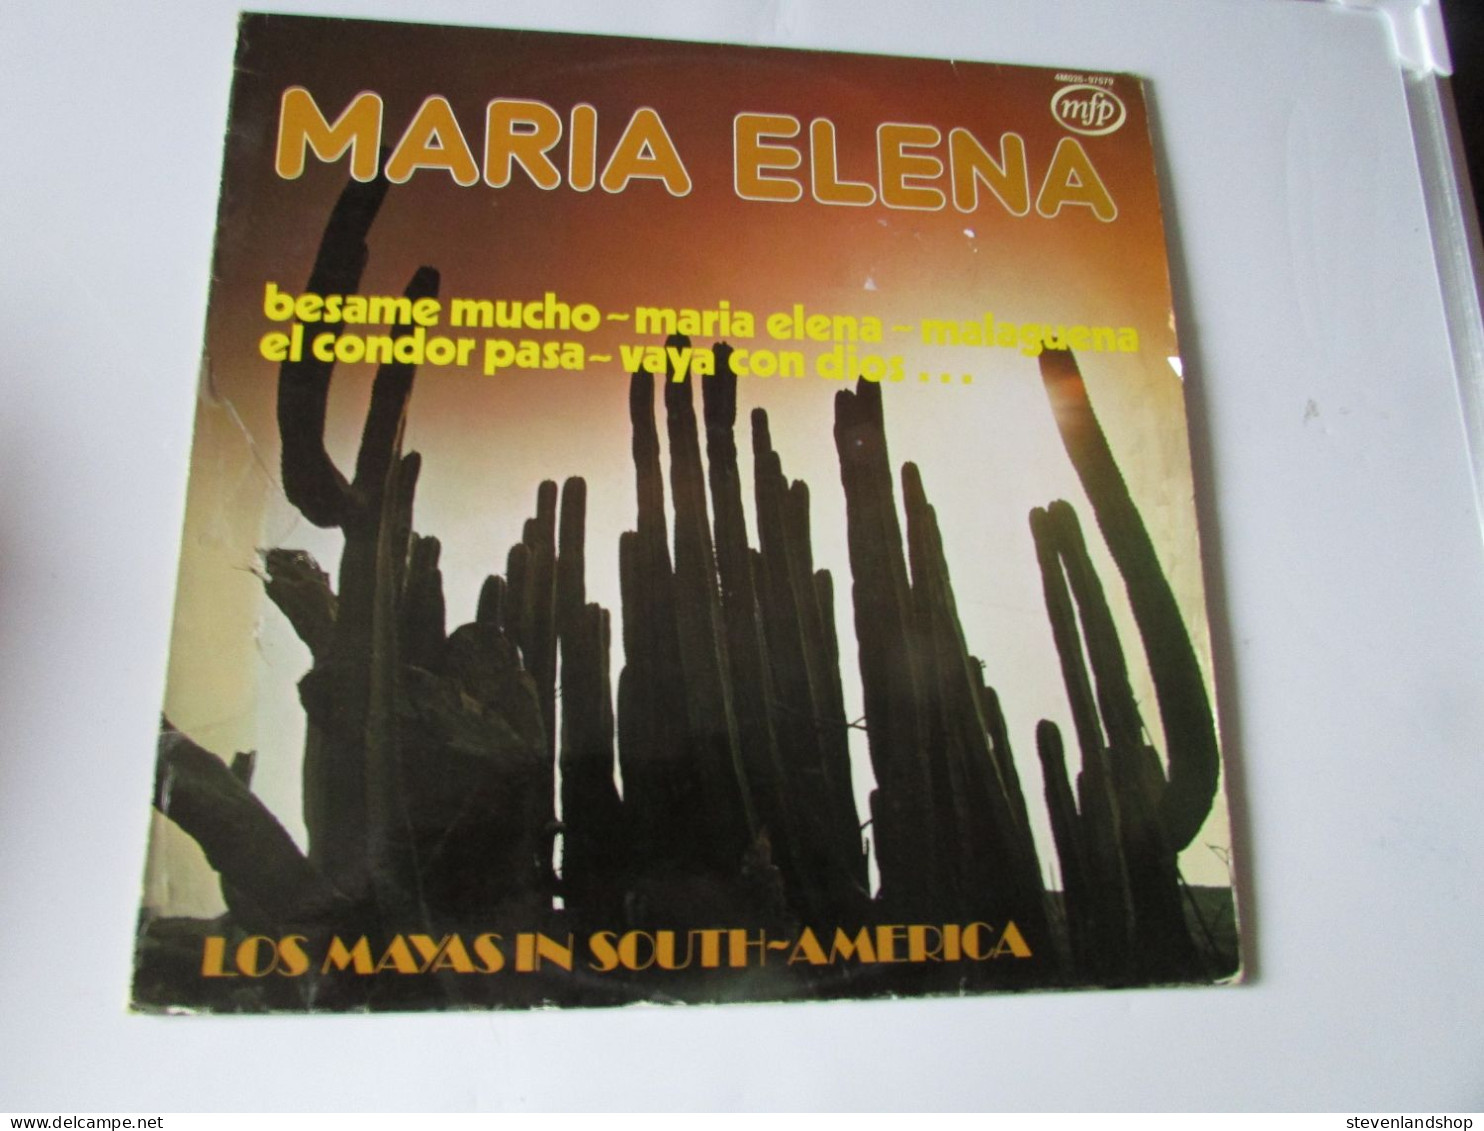 LOS MAYAS IN SOUTH - AMERICA, MARIA ELENA, LP - Altri - Musica Spagnola